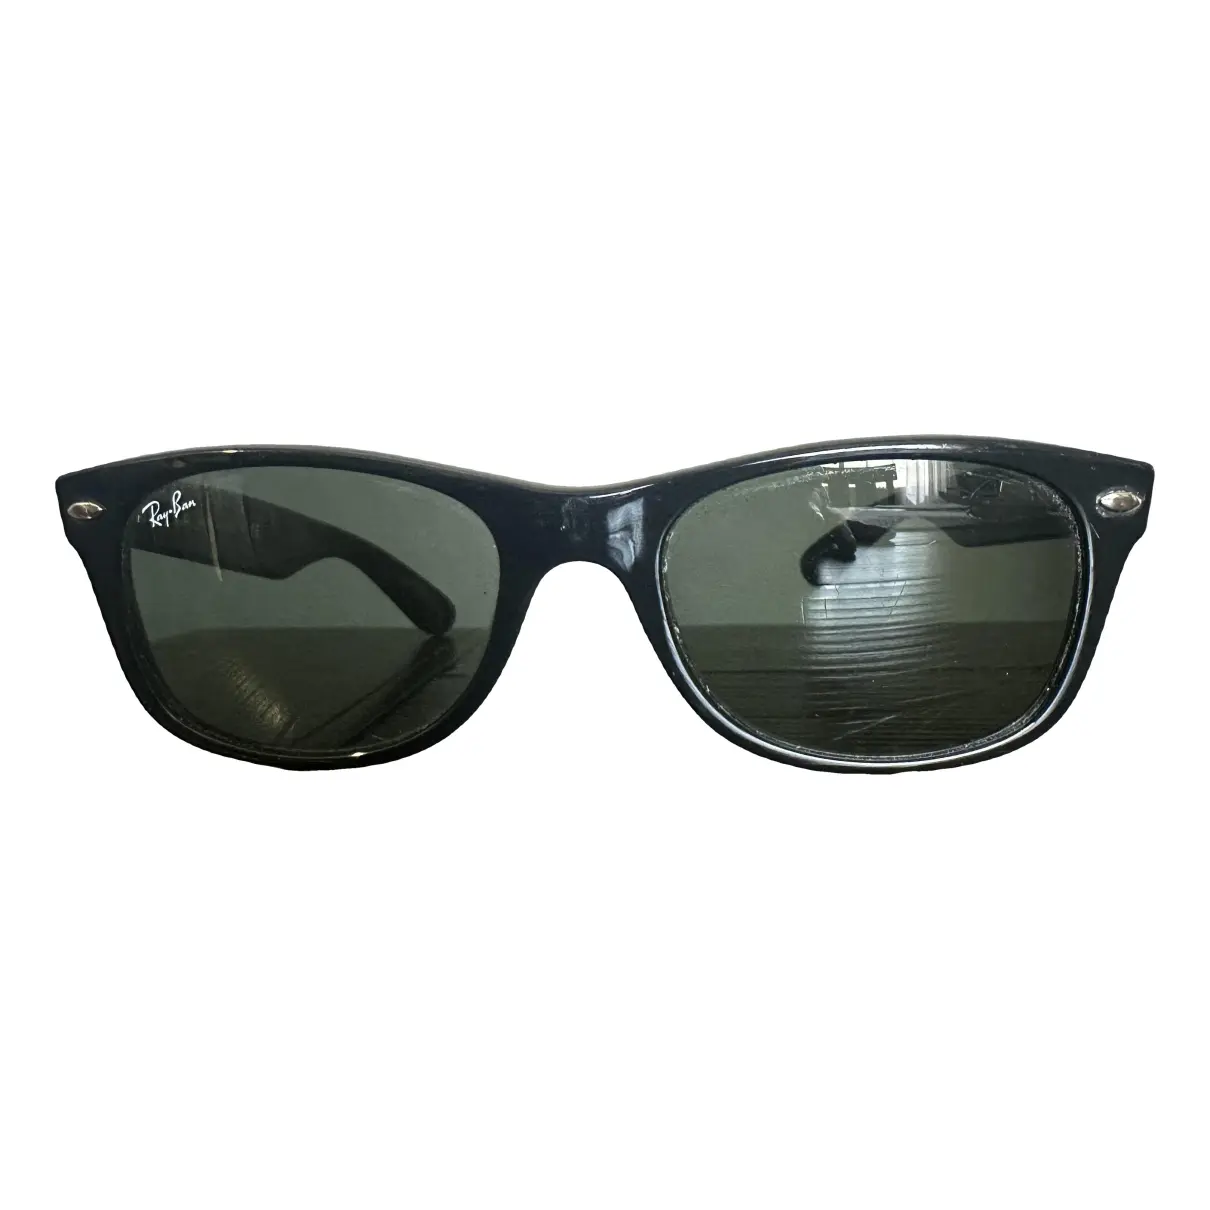 Original Wayfarer sunglasses